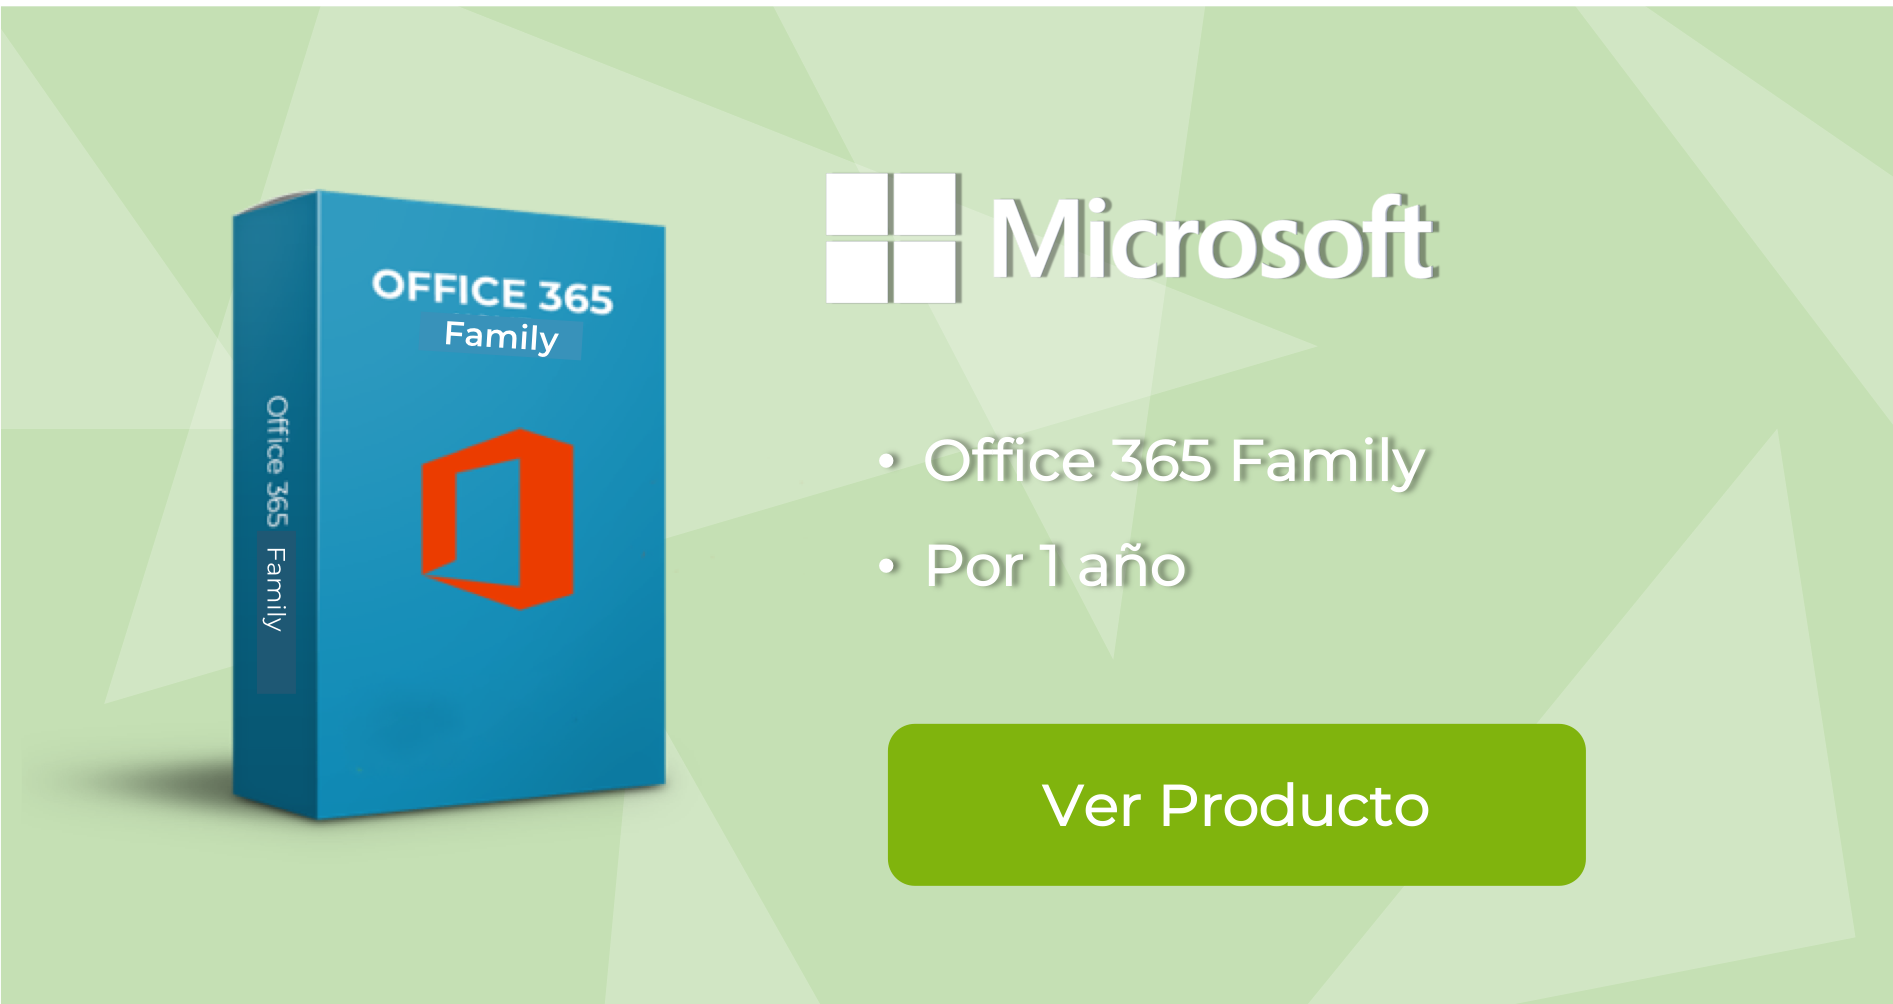 Qué sucede cuando su suscripción a Office 365 caduca? - Directo Software |  Software punto de venta